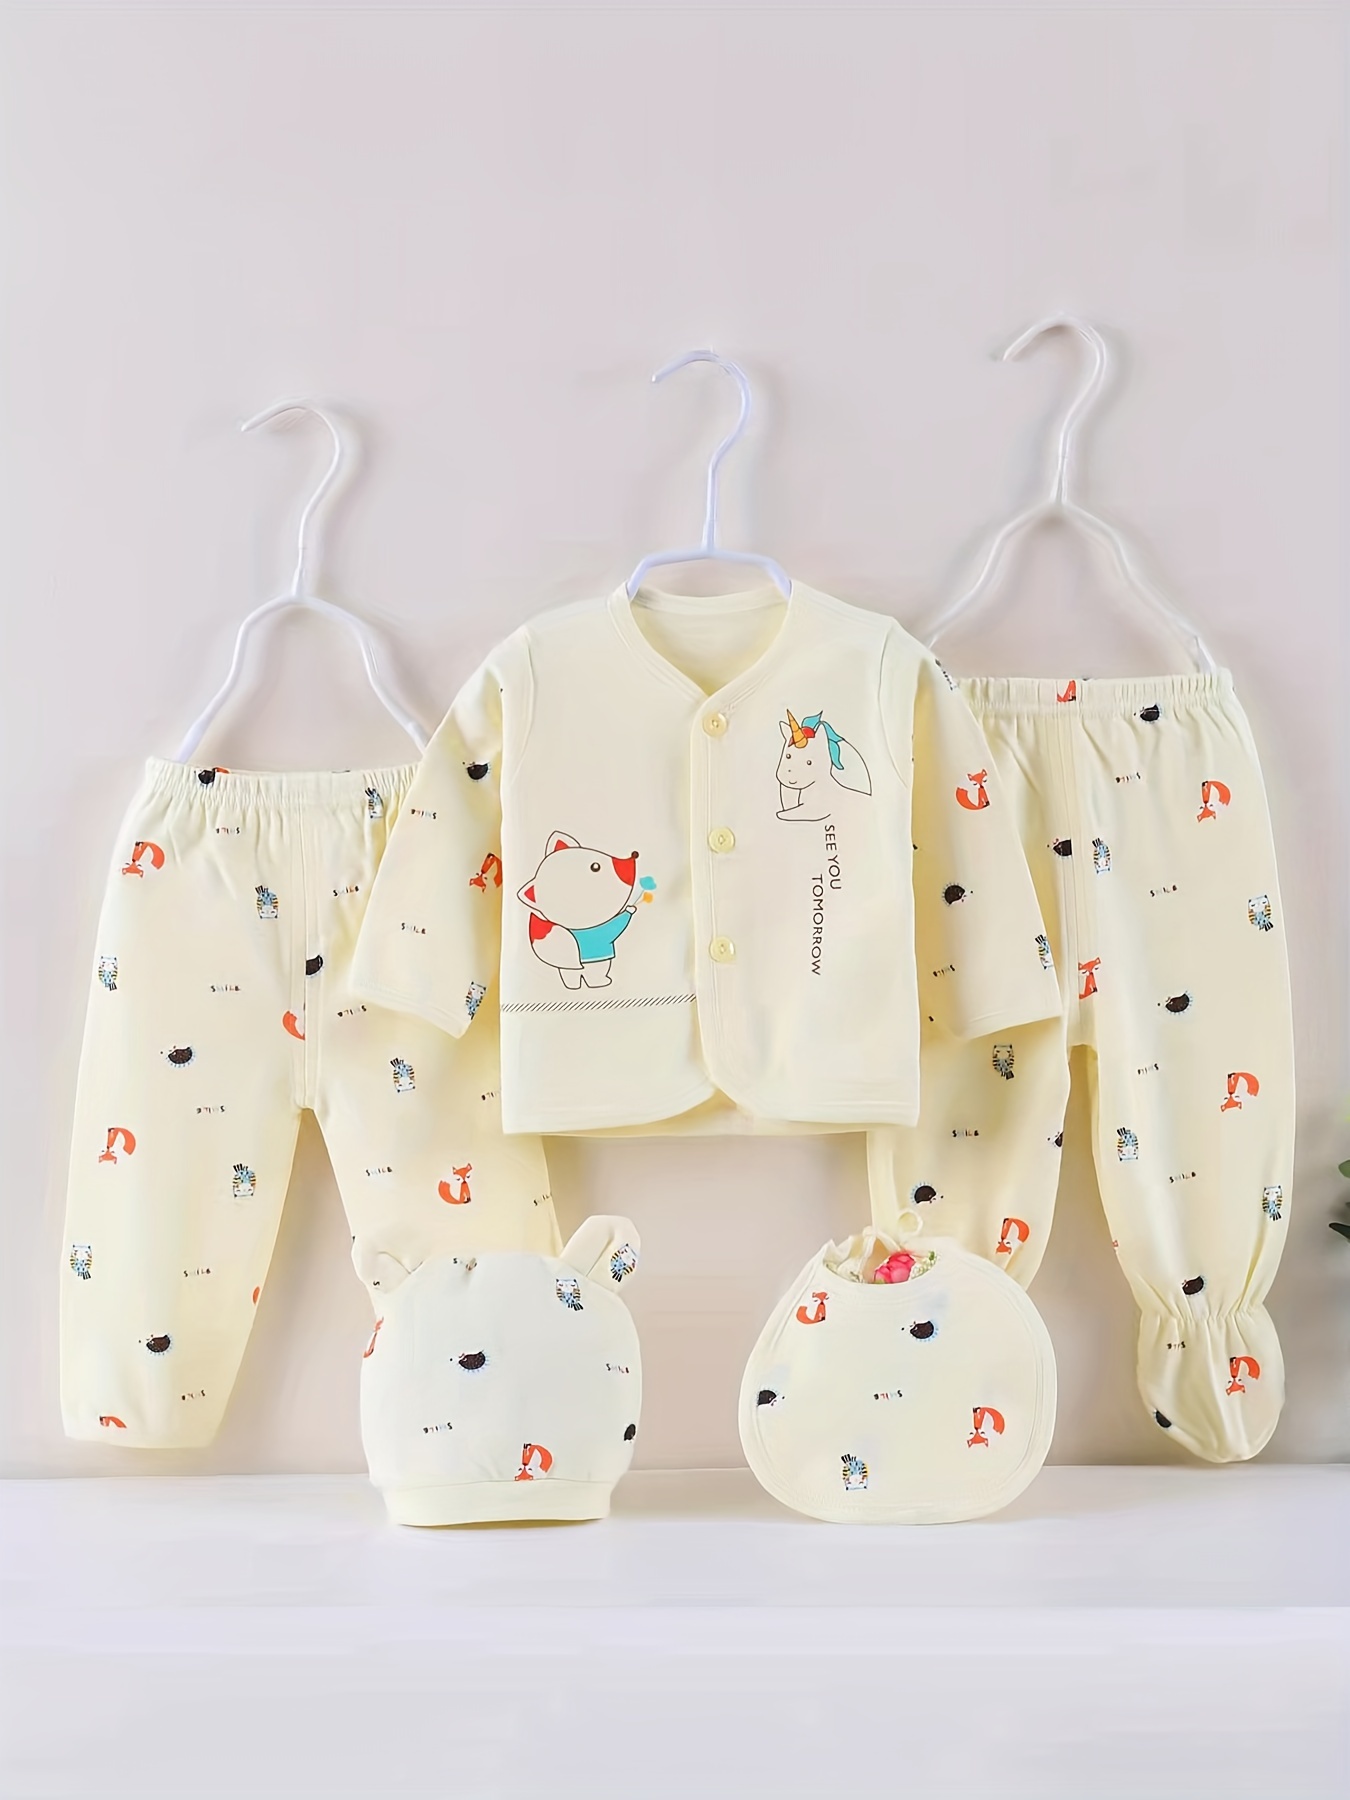  Conjunto de 5 piezas de ropa de algodón para bebé